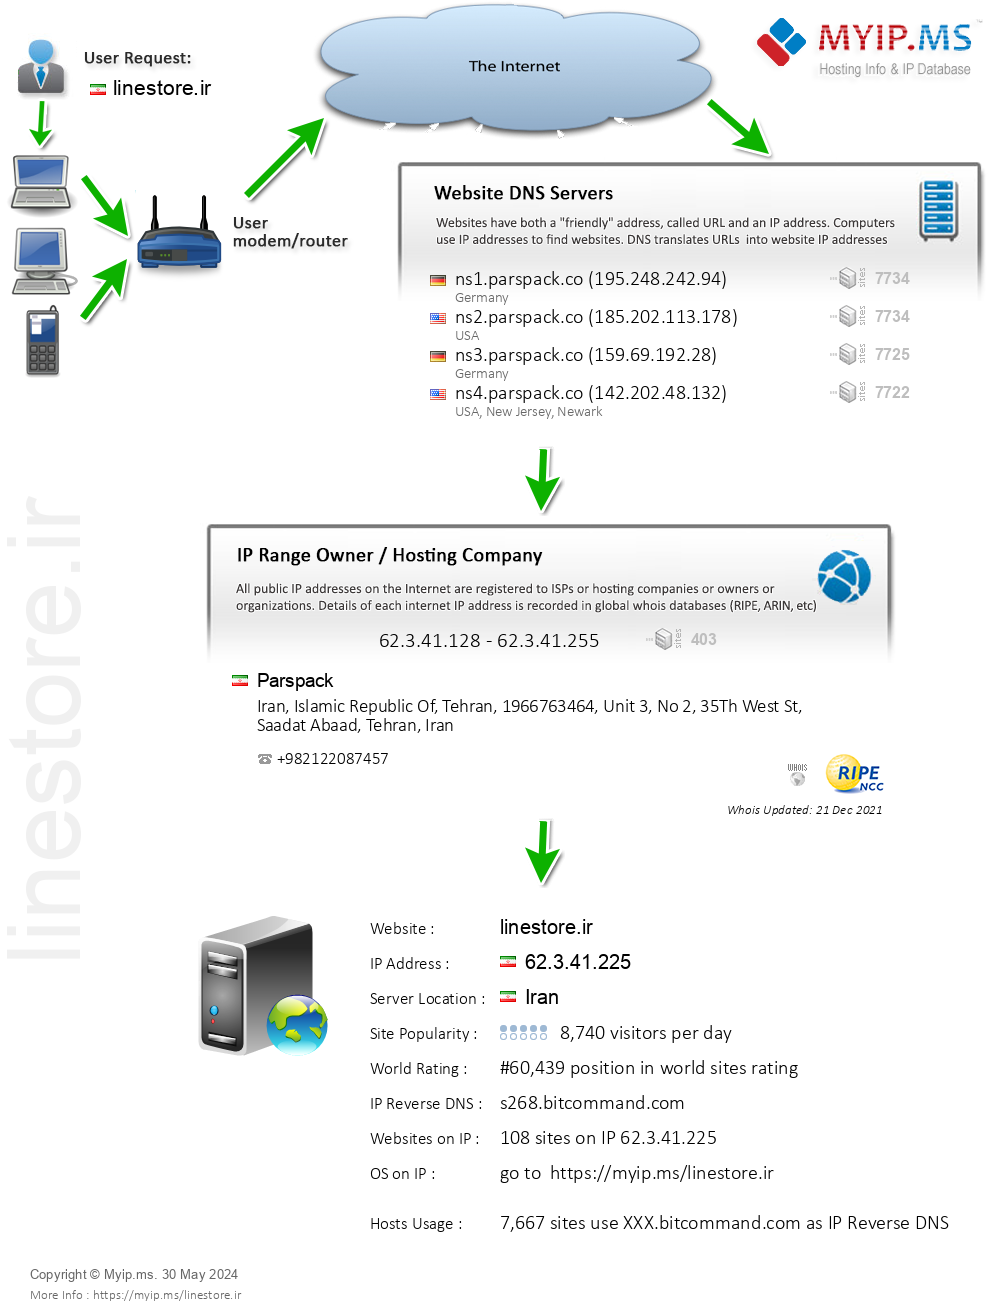 Linestore.ir - Website Hosting Visual IP Diagram